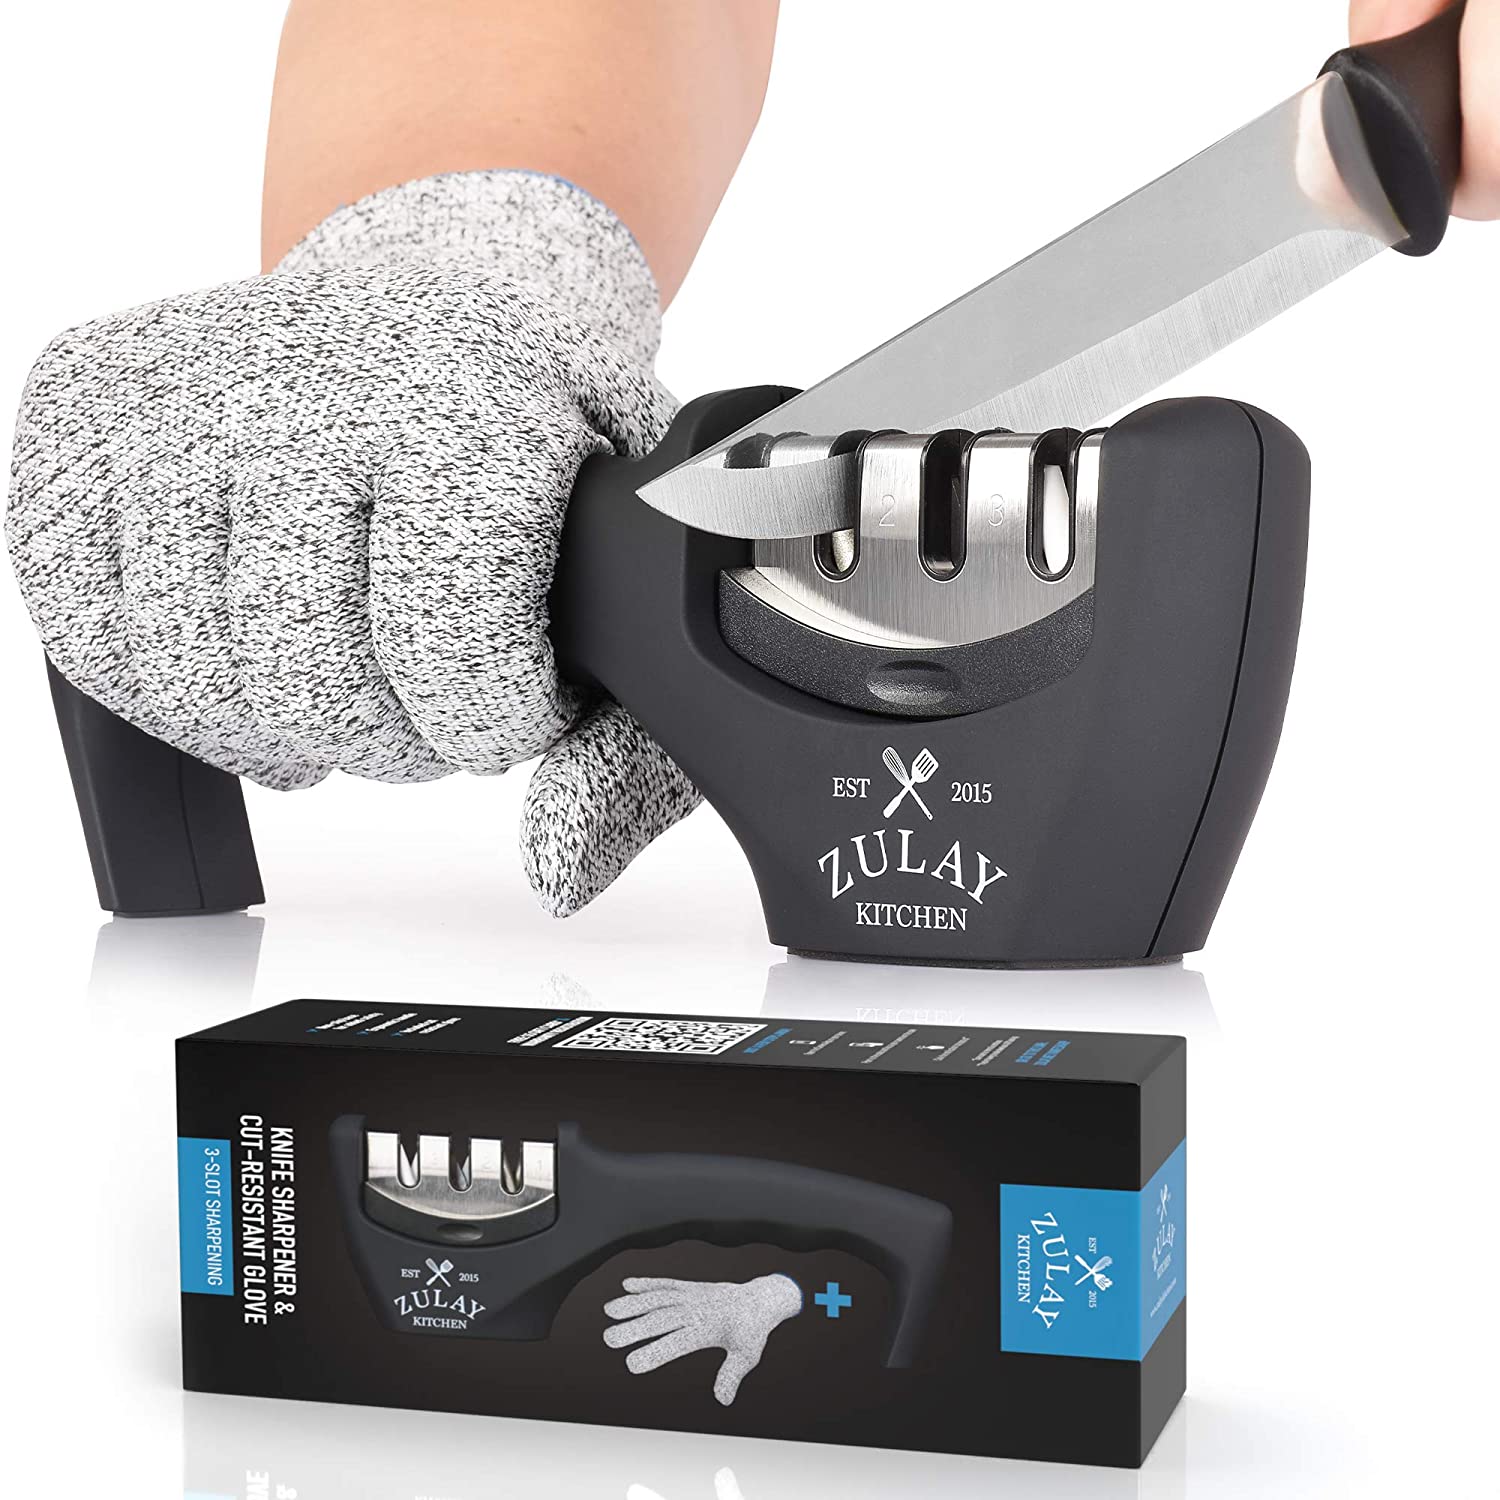 Zulay Kitchen 3 Stage Knife Sharpener & Cut-Resistant Glove - Zulay KitchenZulay Kitchen